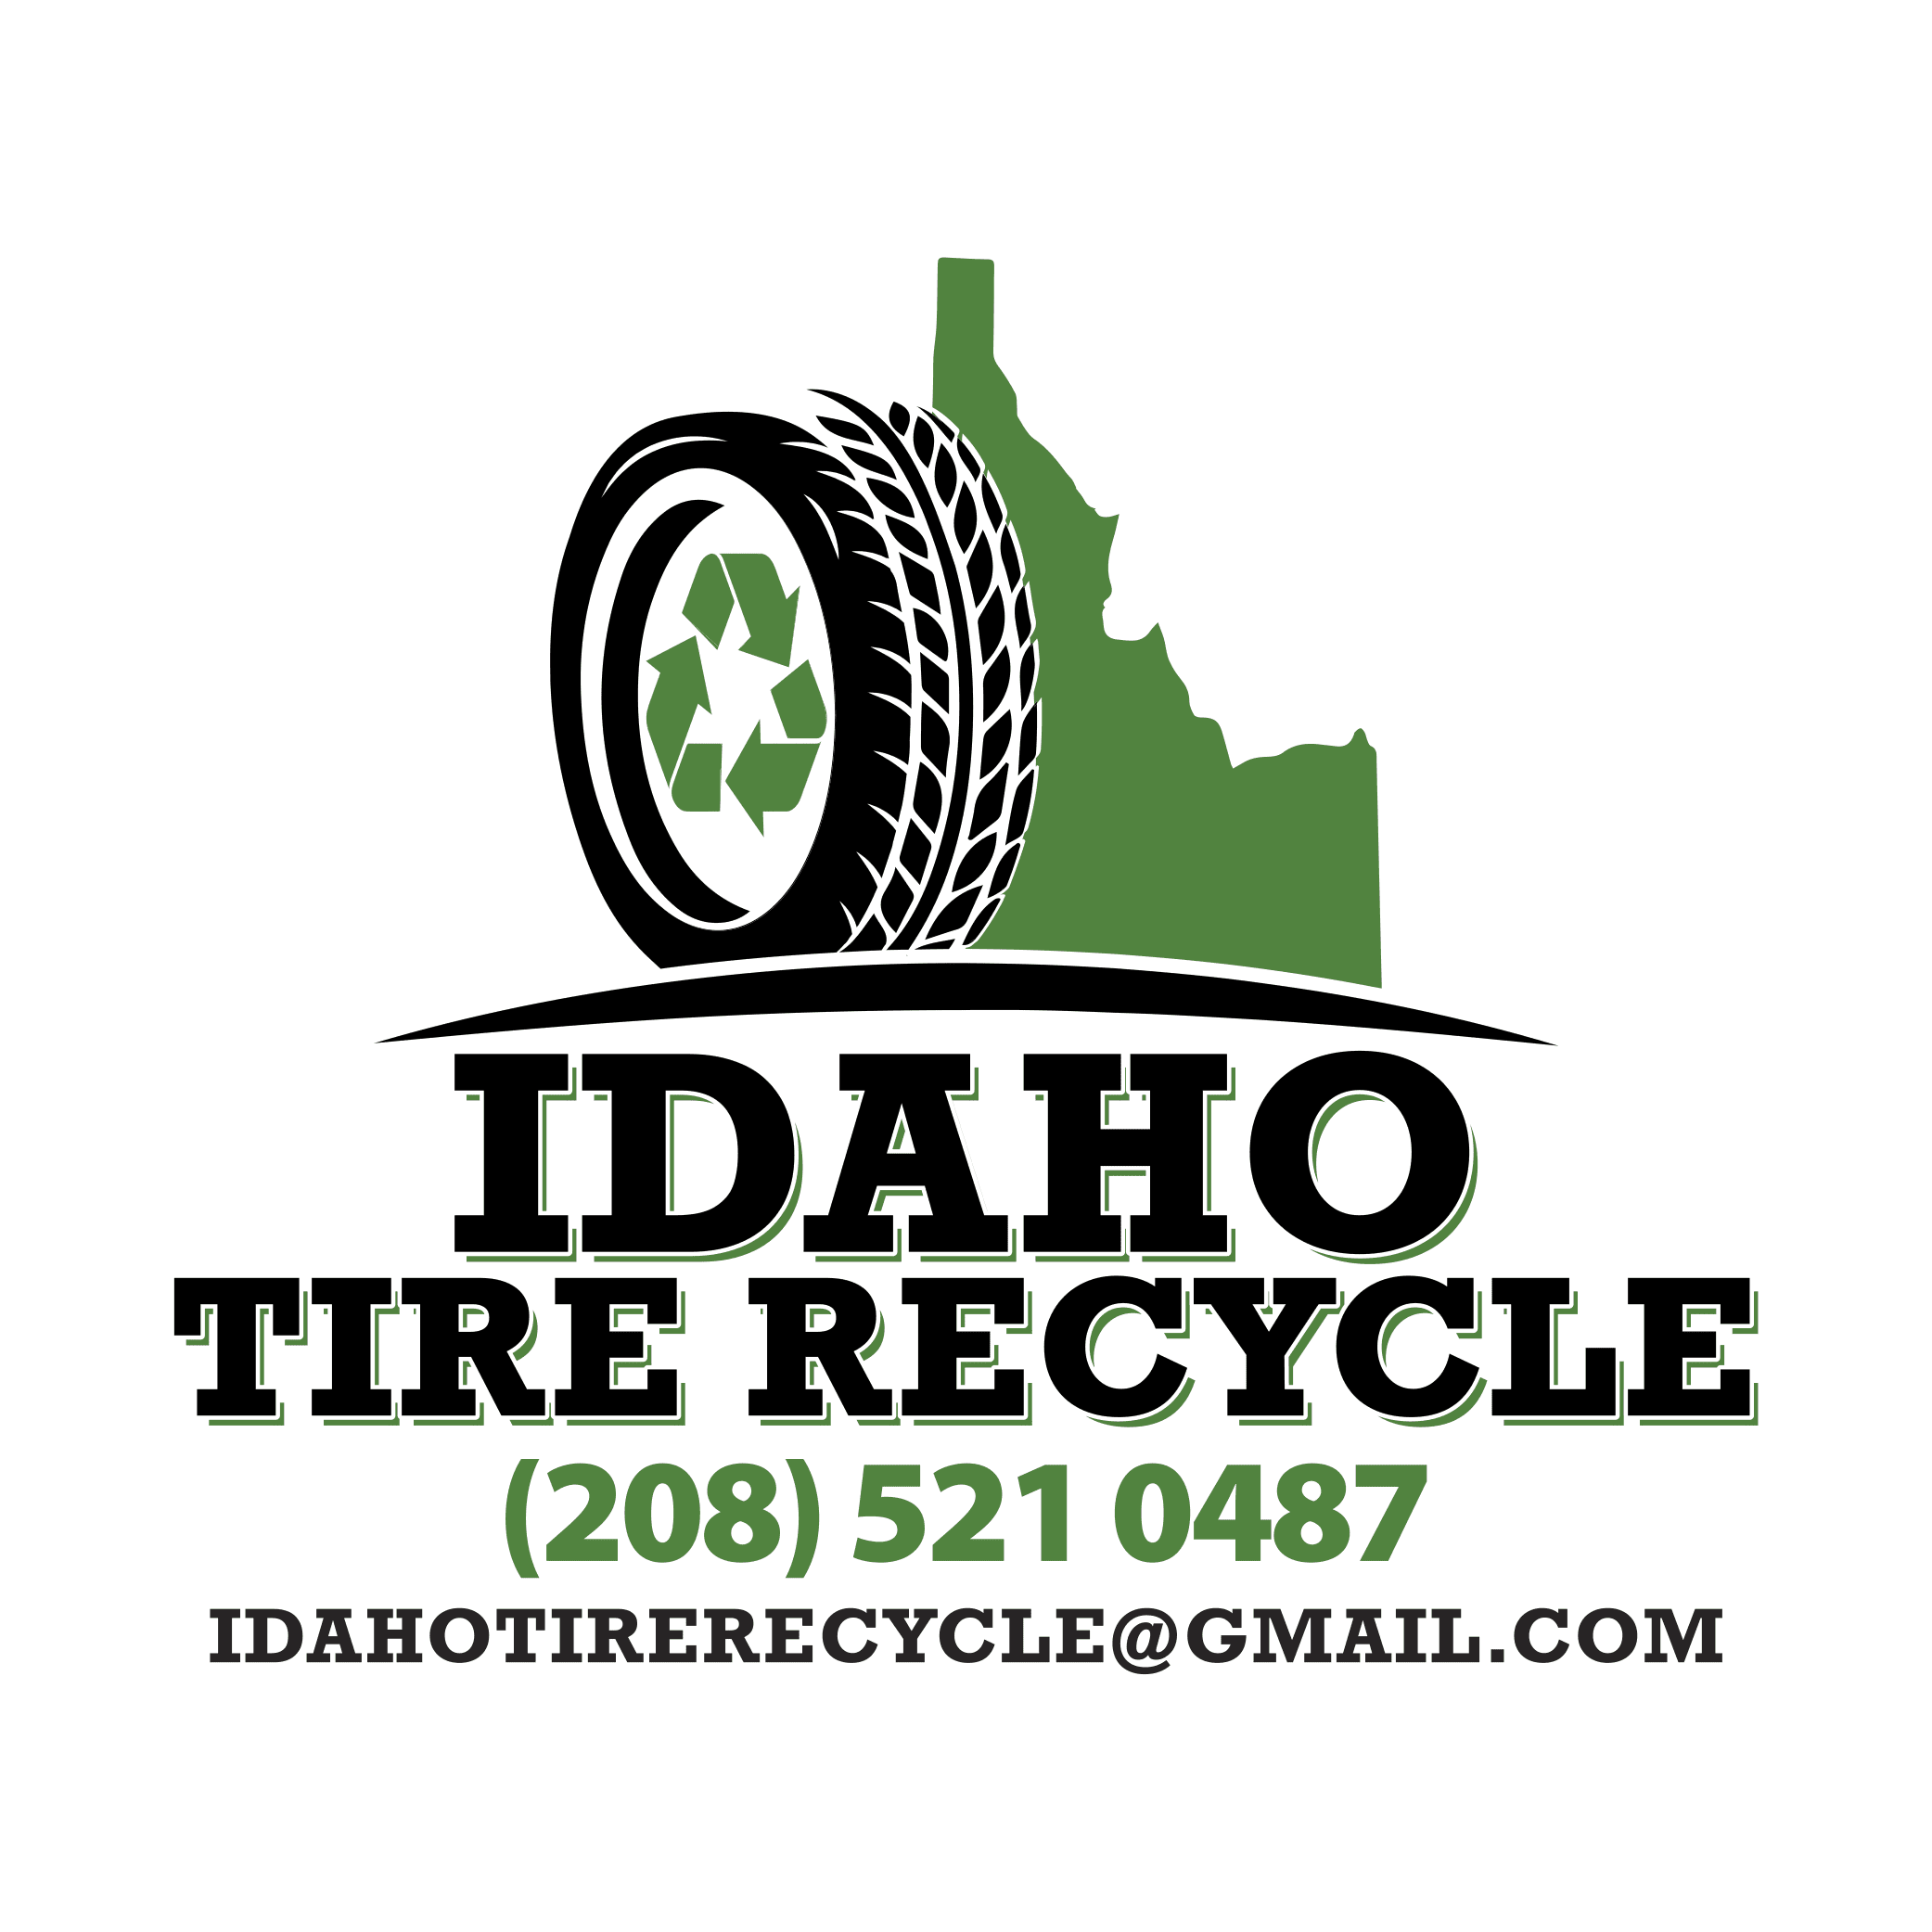 Idaho Tire Recycle